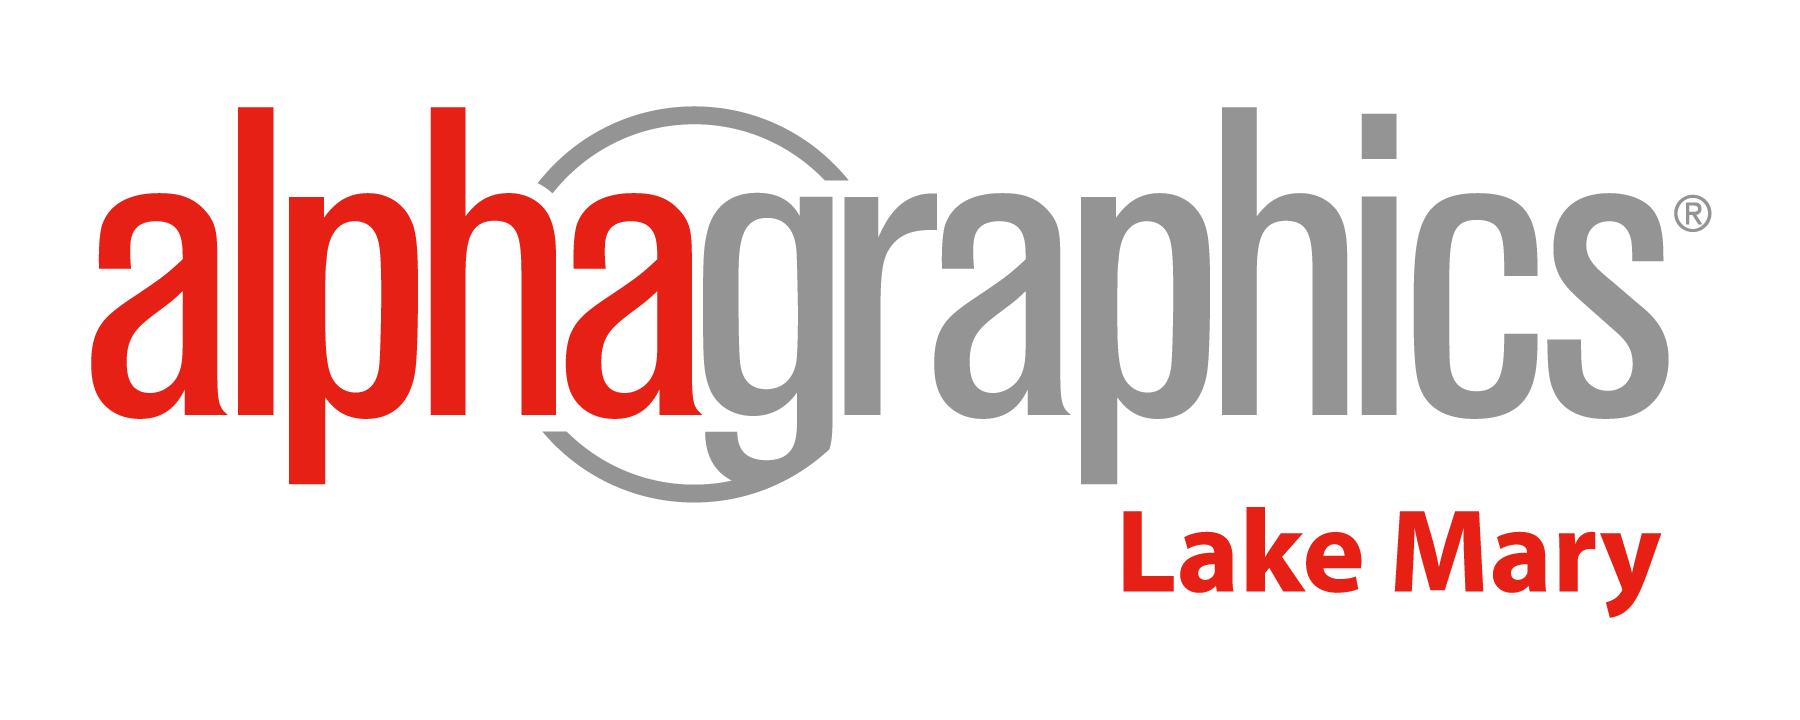 AlphaGraphics Lake Mary's Logo